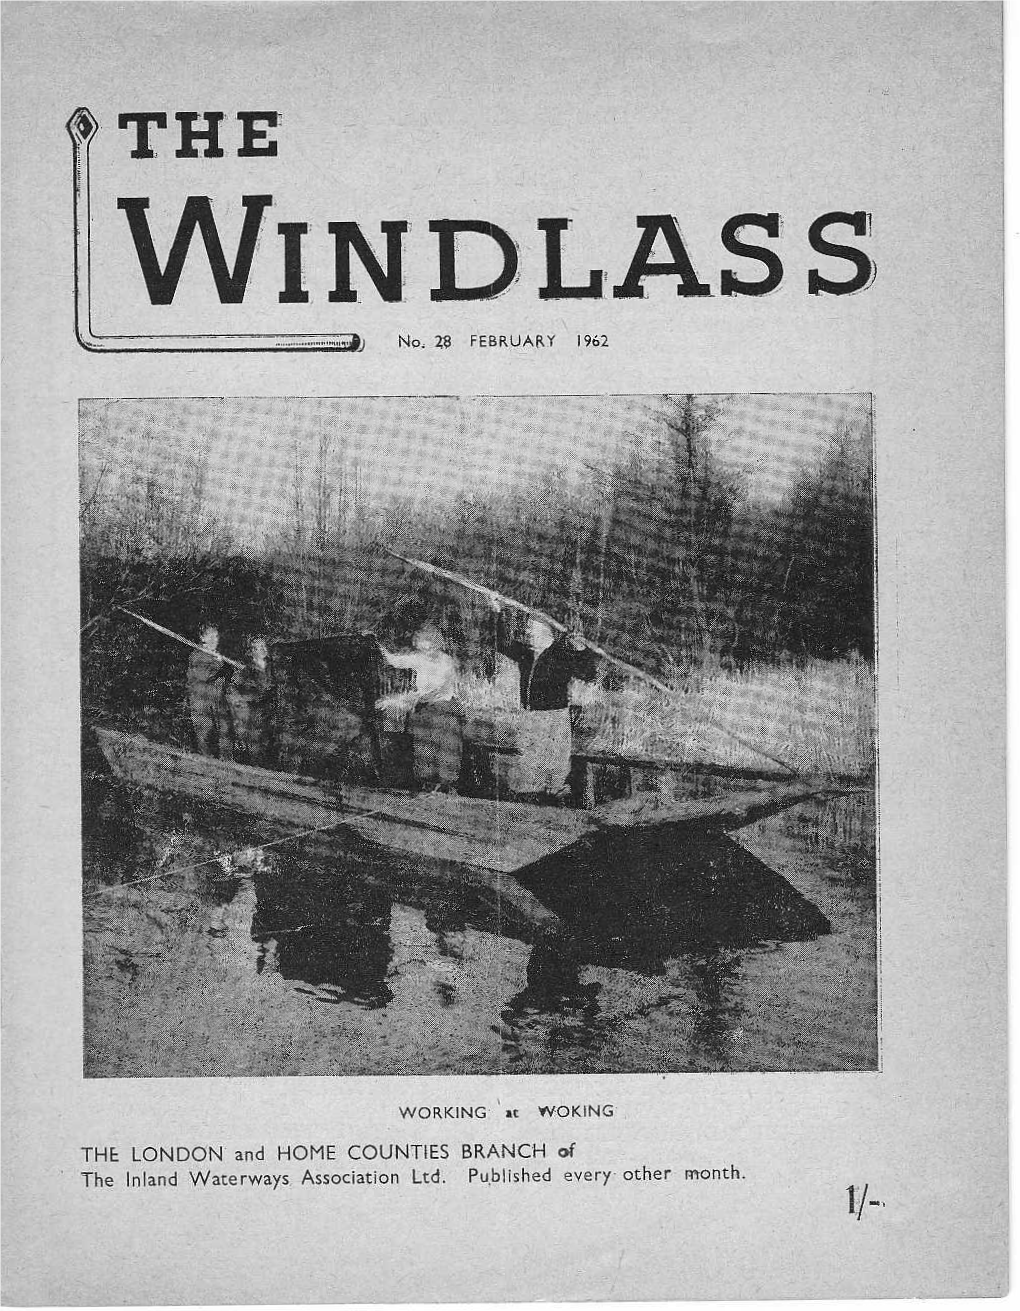 Windlass No. 28 February 1962